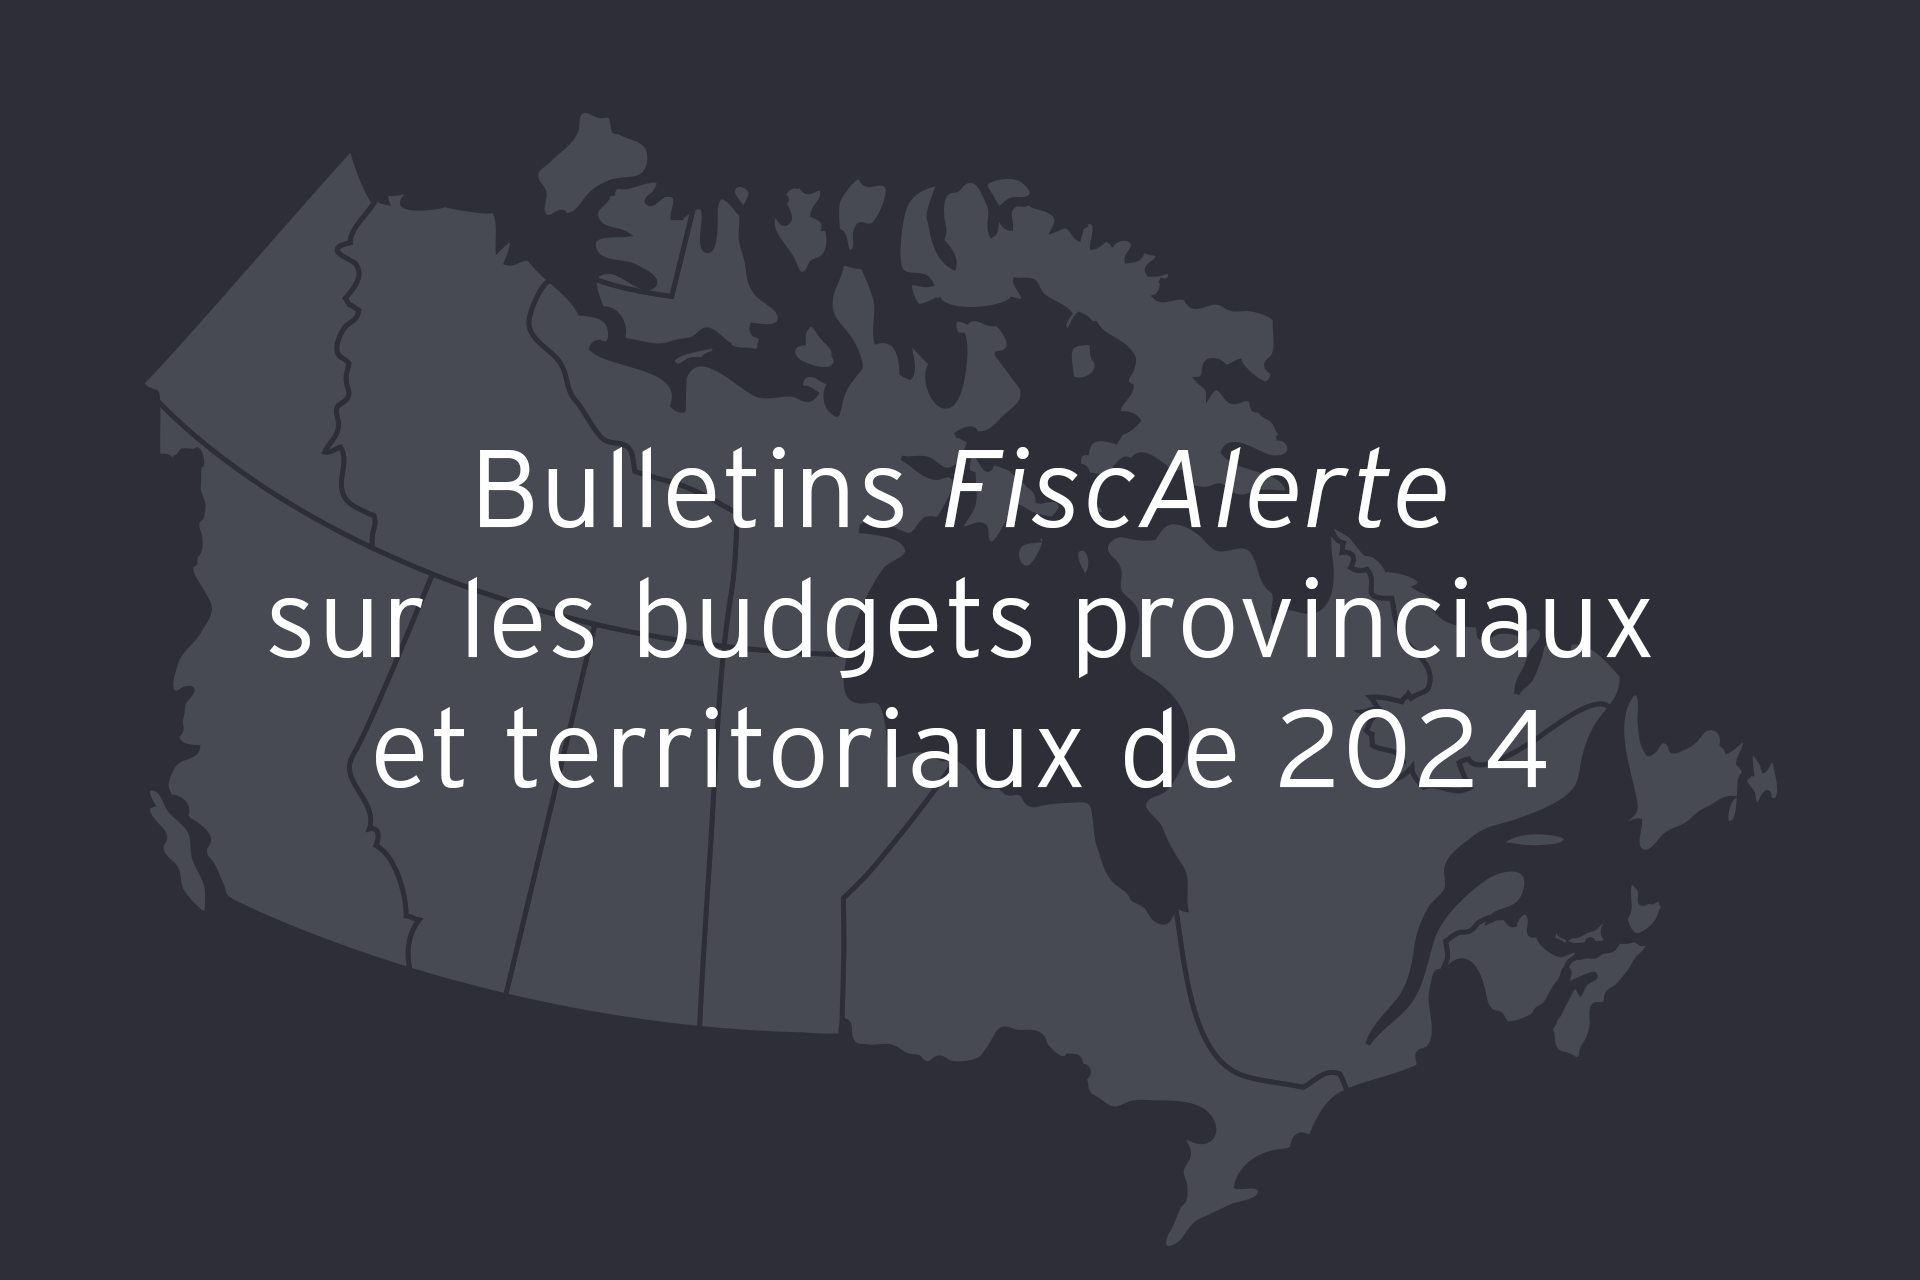 Bulletins FiscAlerte sur les budgets provinciaux et territoriaux de 2024